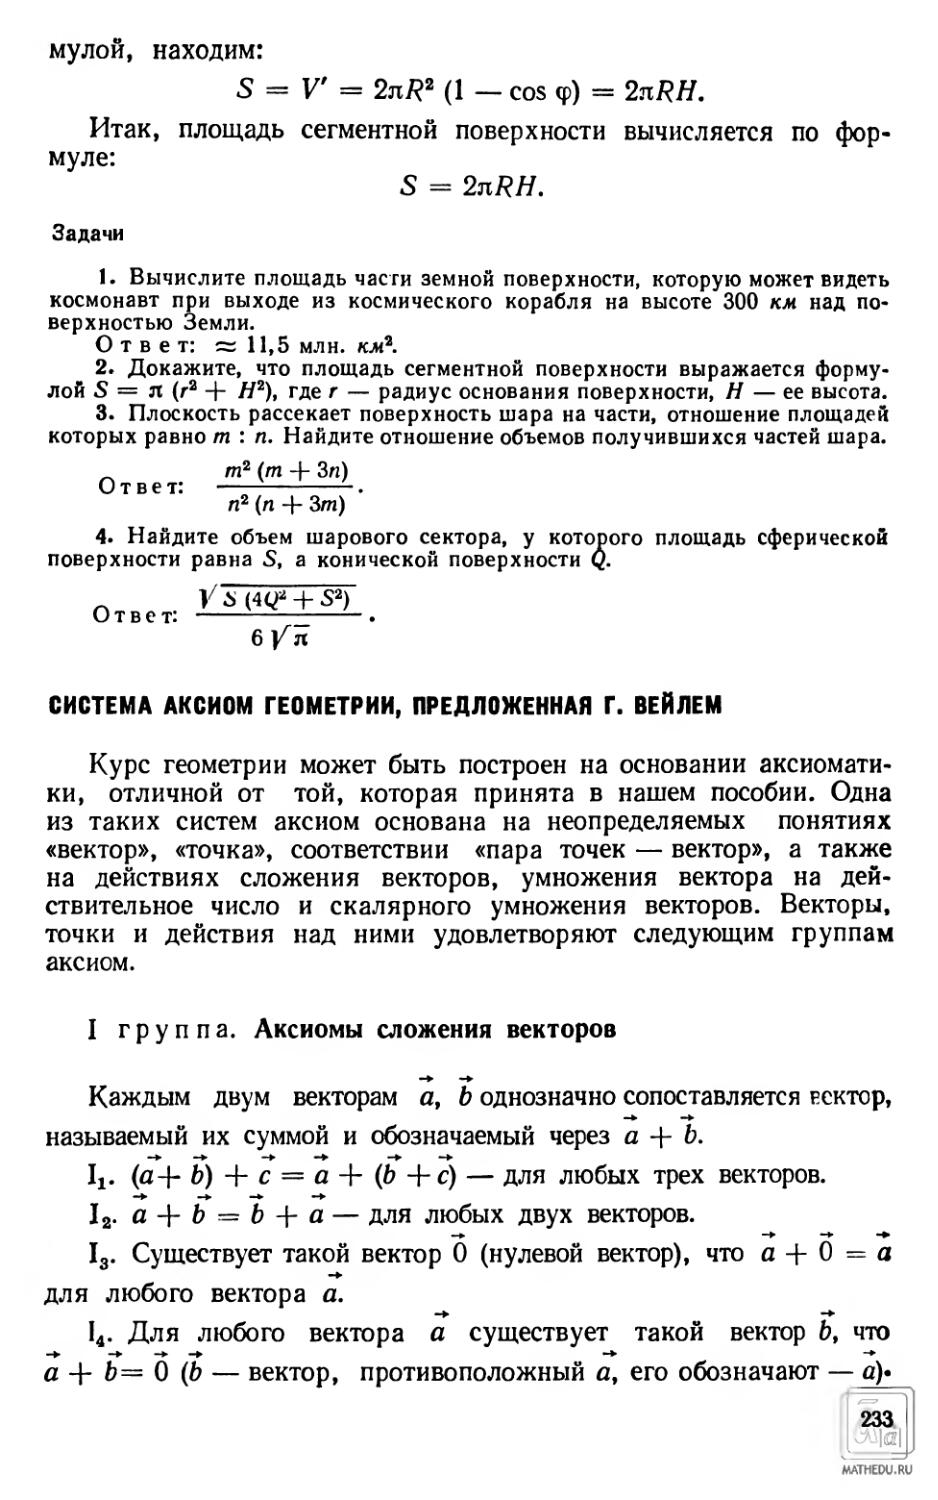 Система аксиом геометрии, предложенная Г. Вейлем